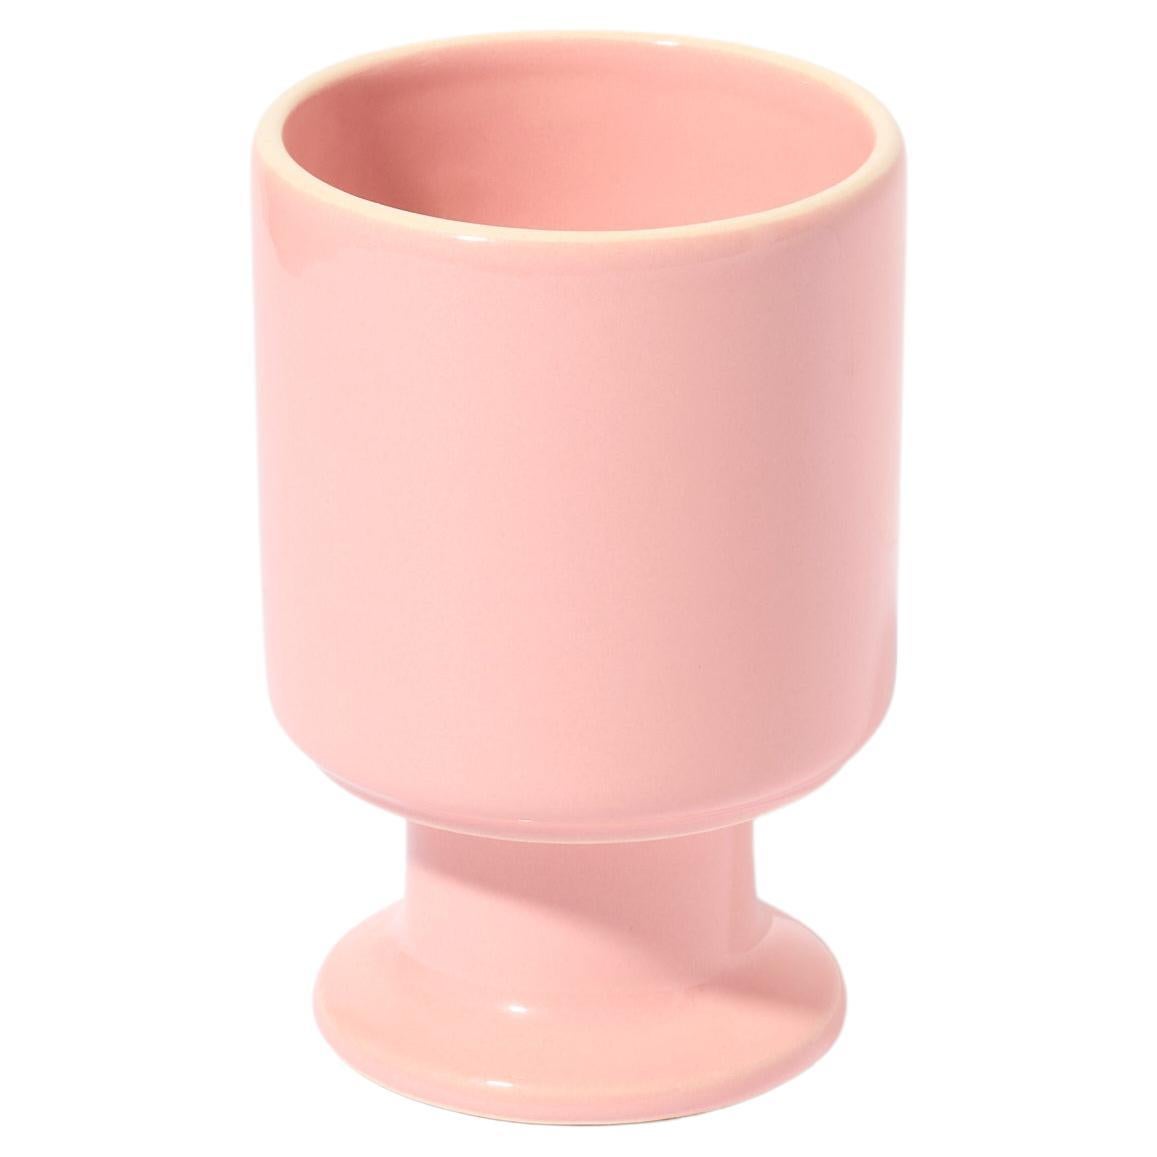 Set of 2 WIT Mug / Candy pink by Malwina Konopacka